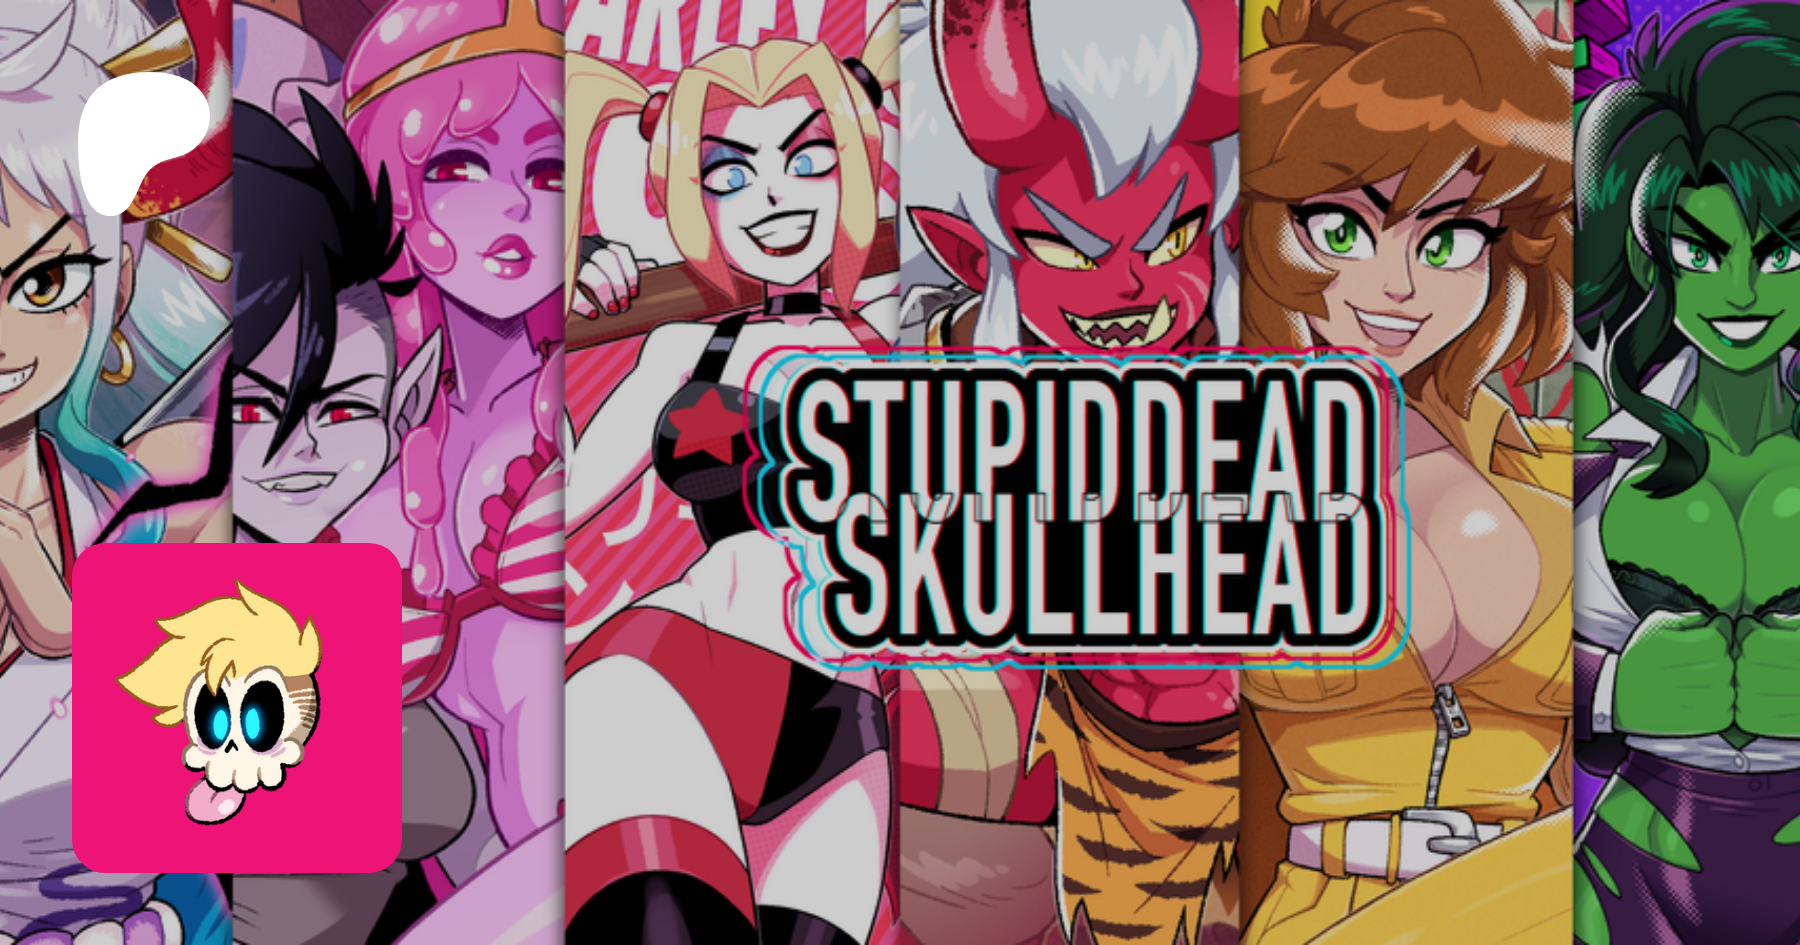 Stupiddead skullhead